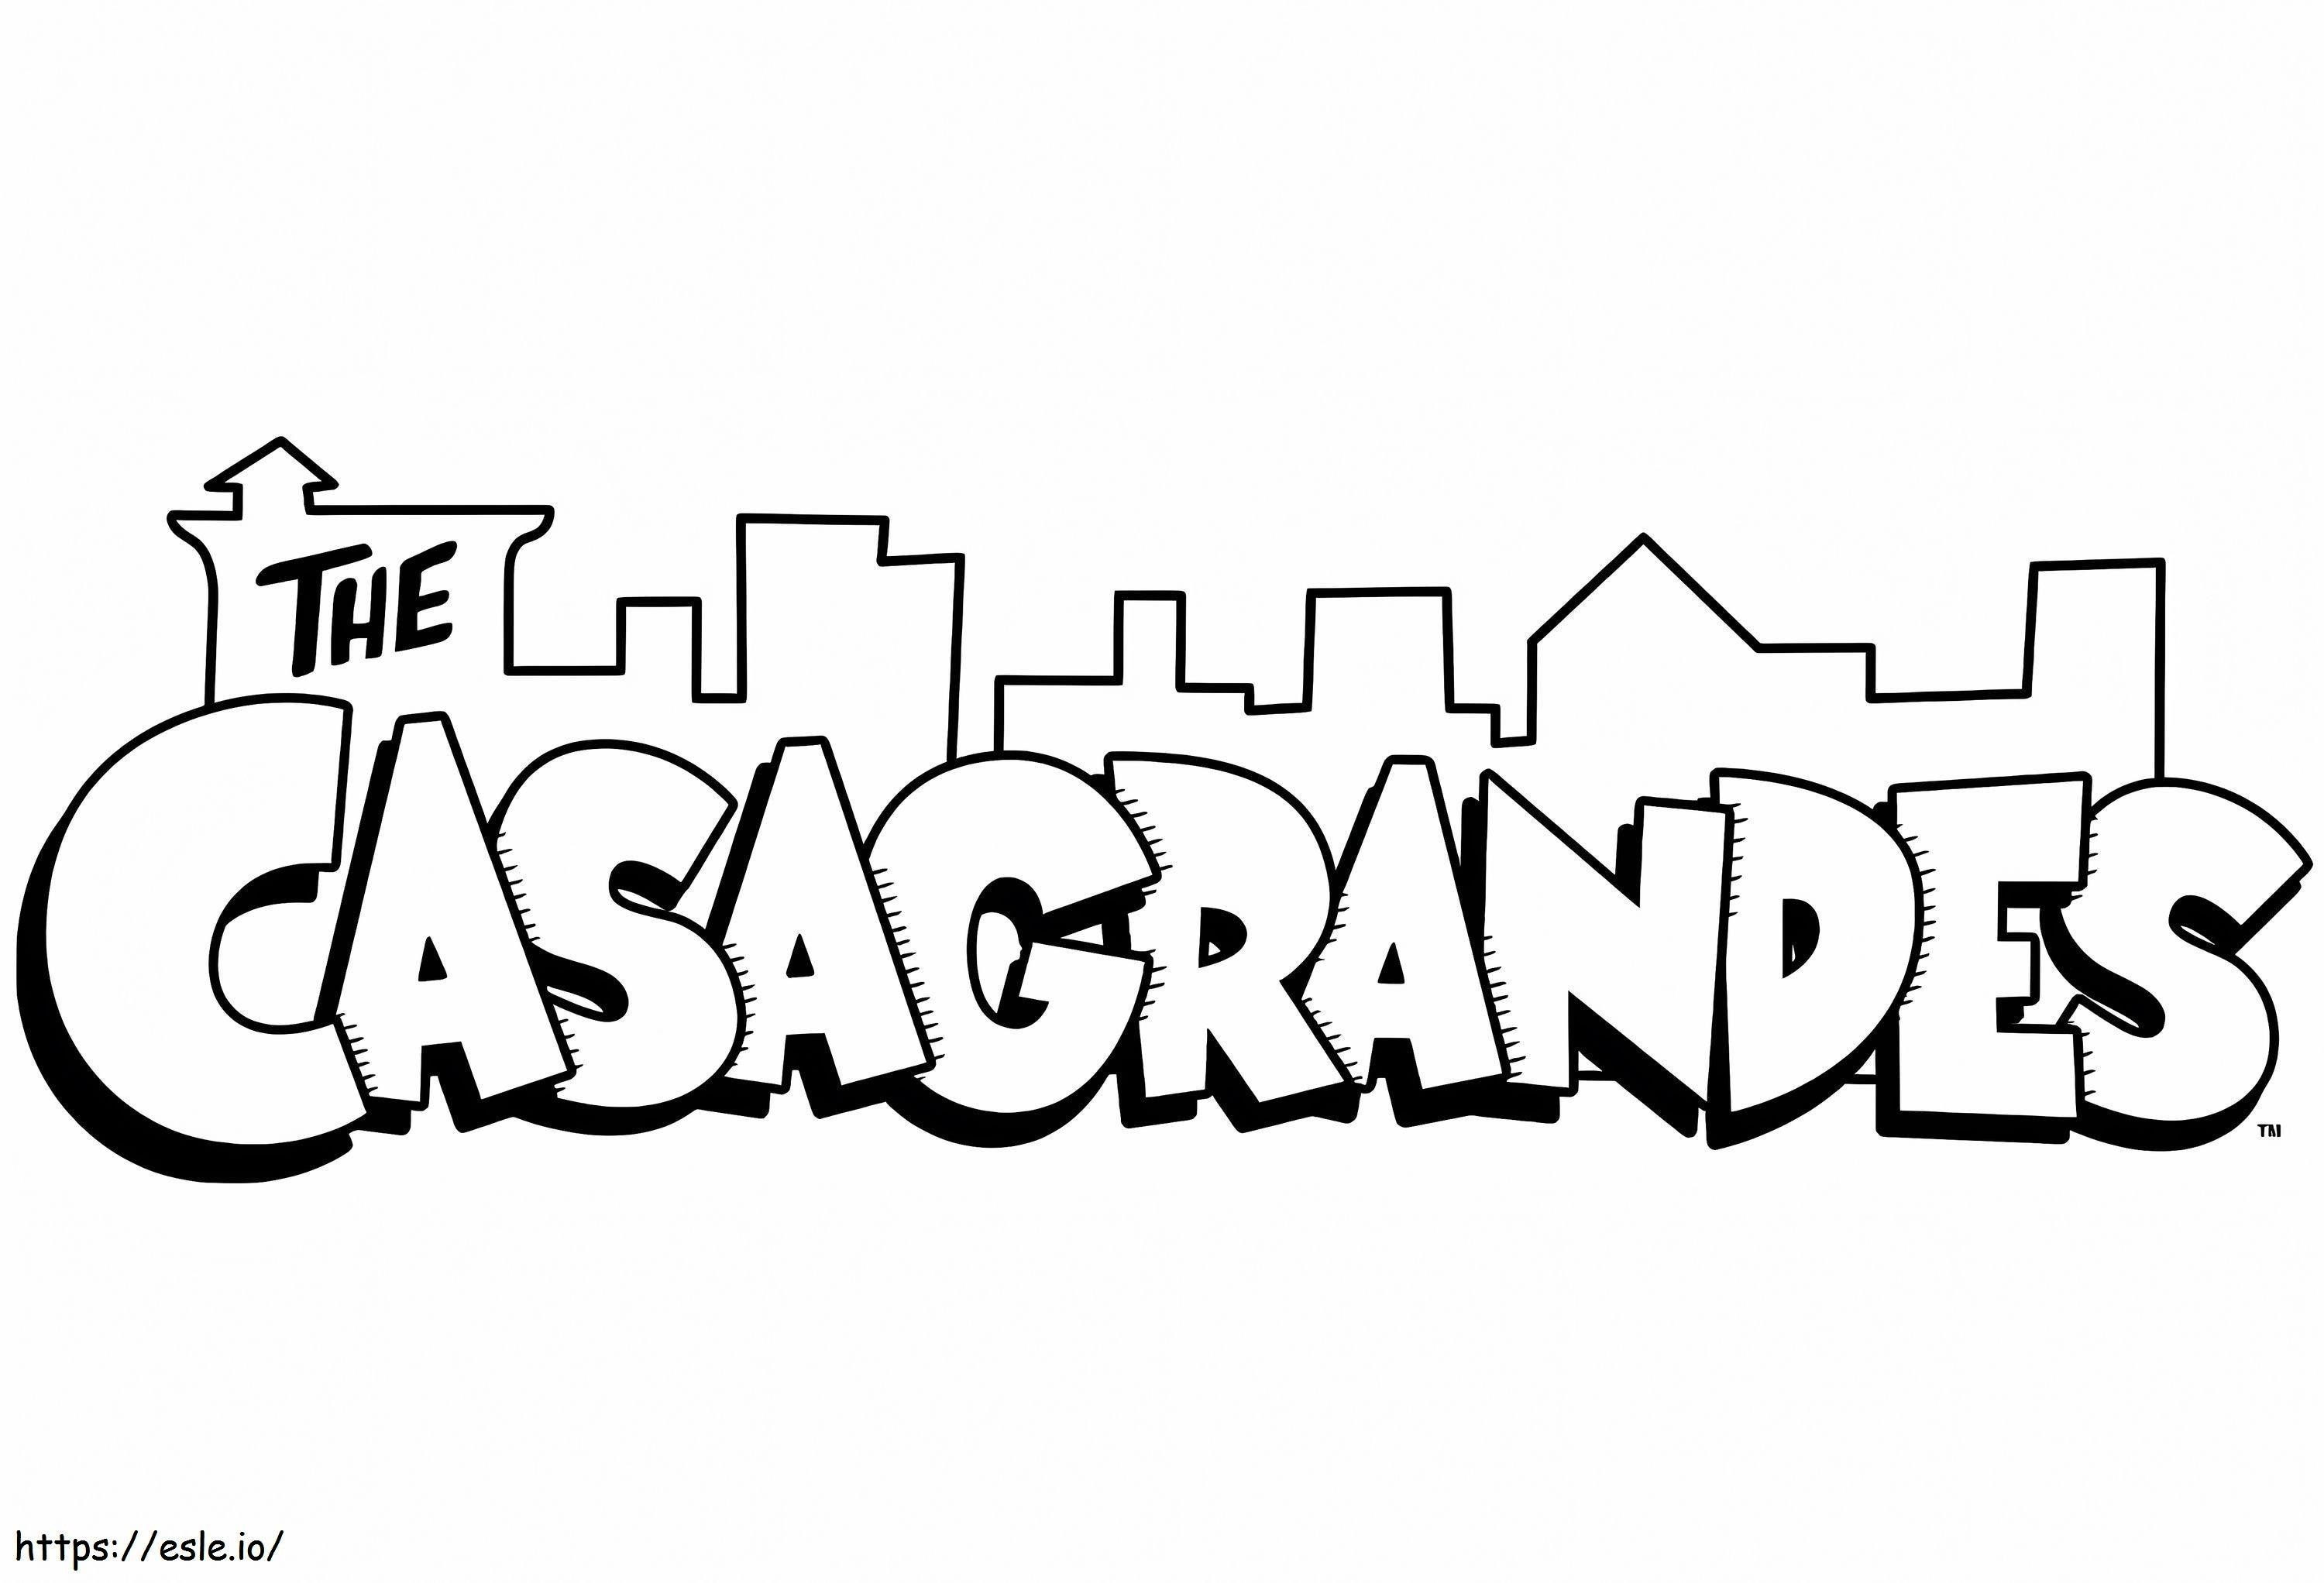 Il logo di Casagrande da colorare